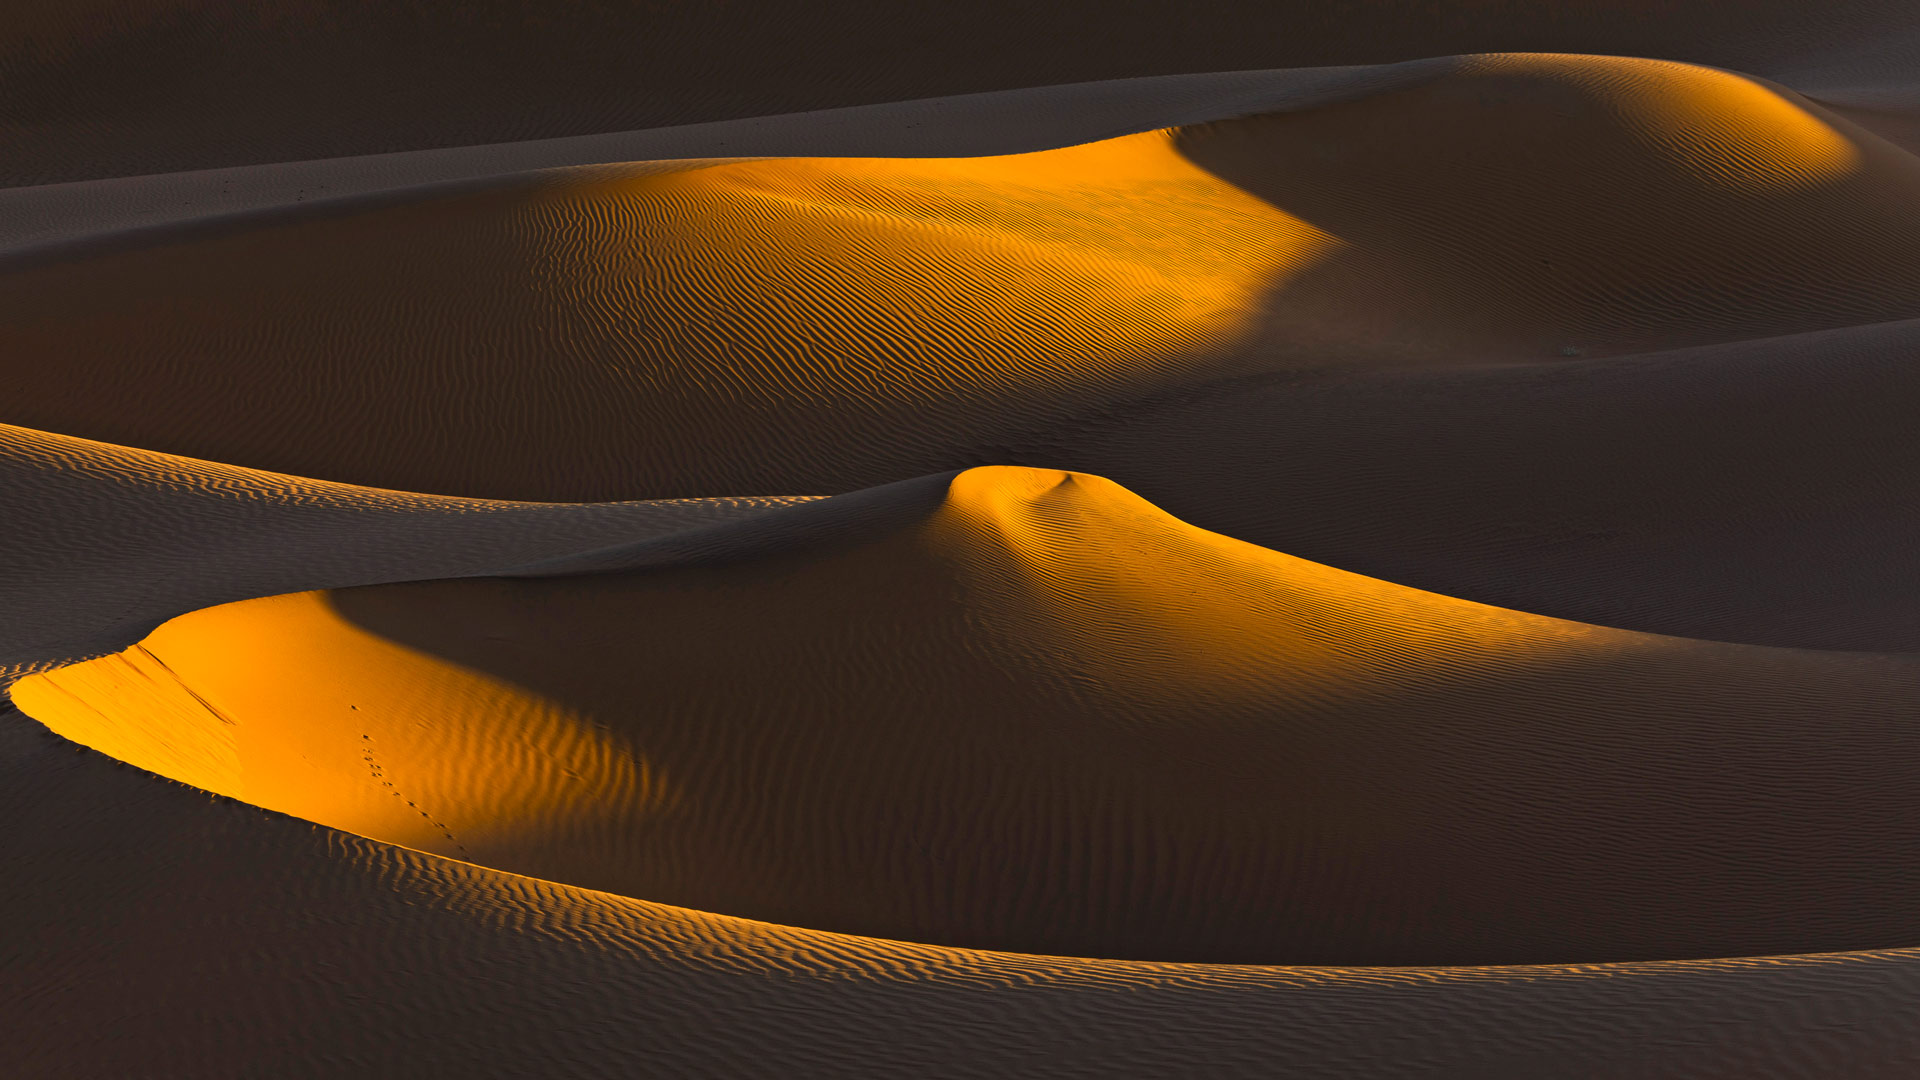 Sahara Dunes